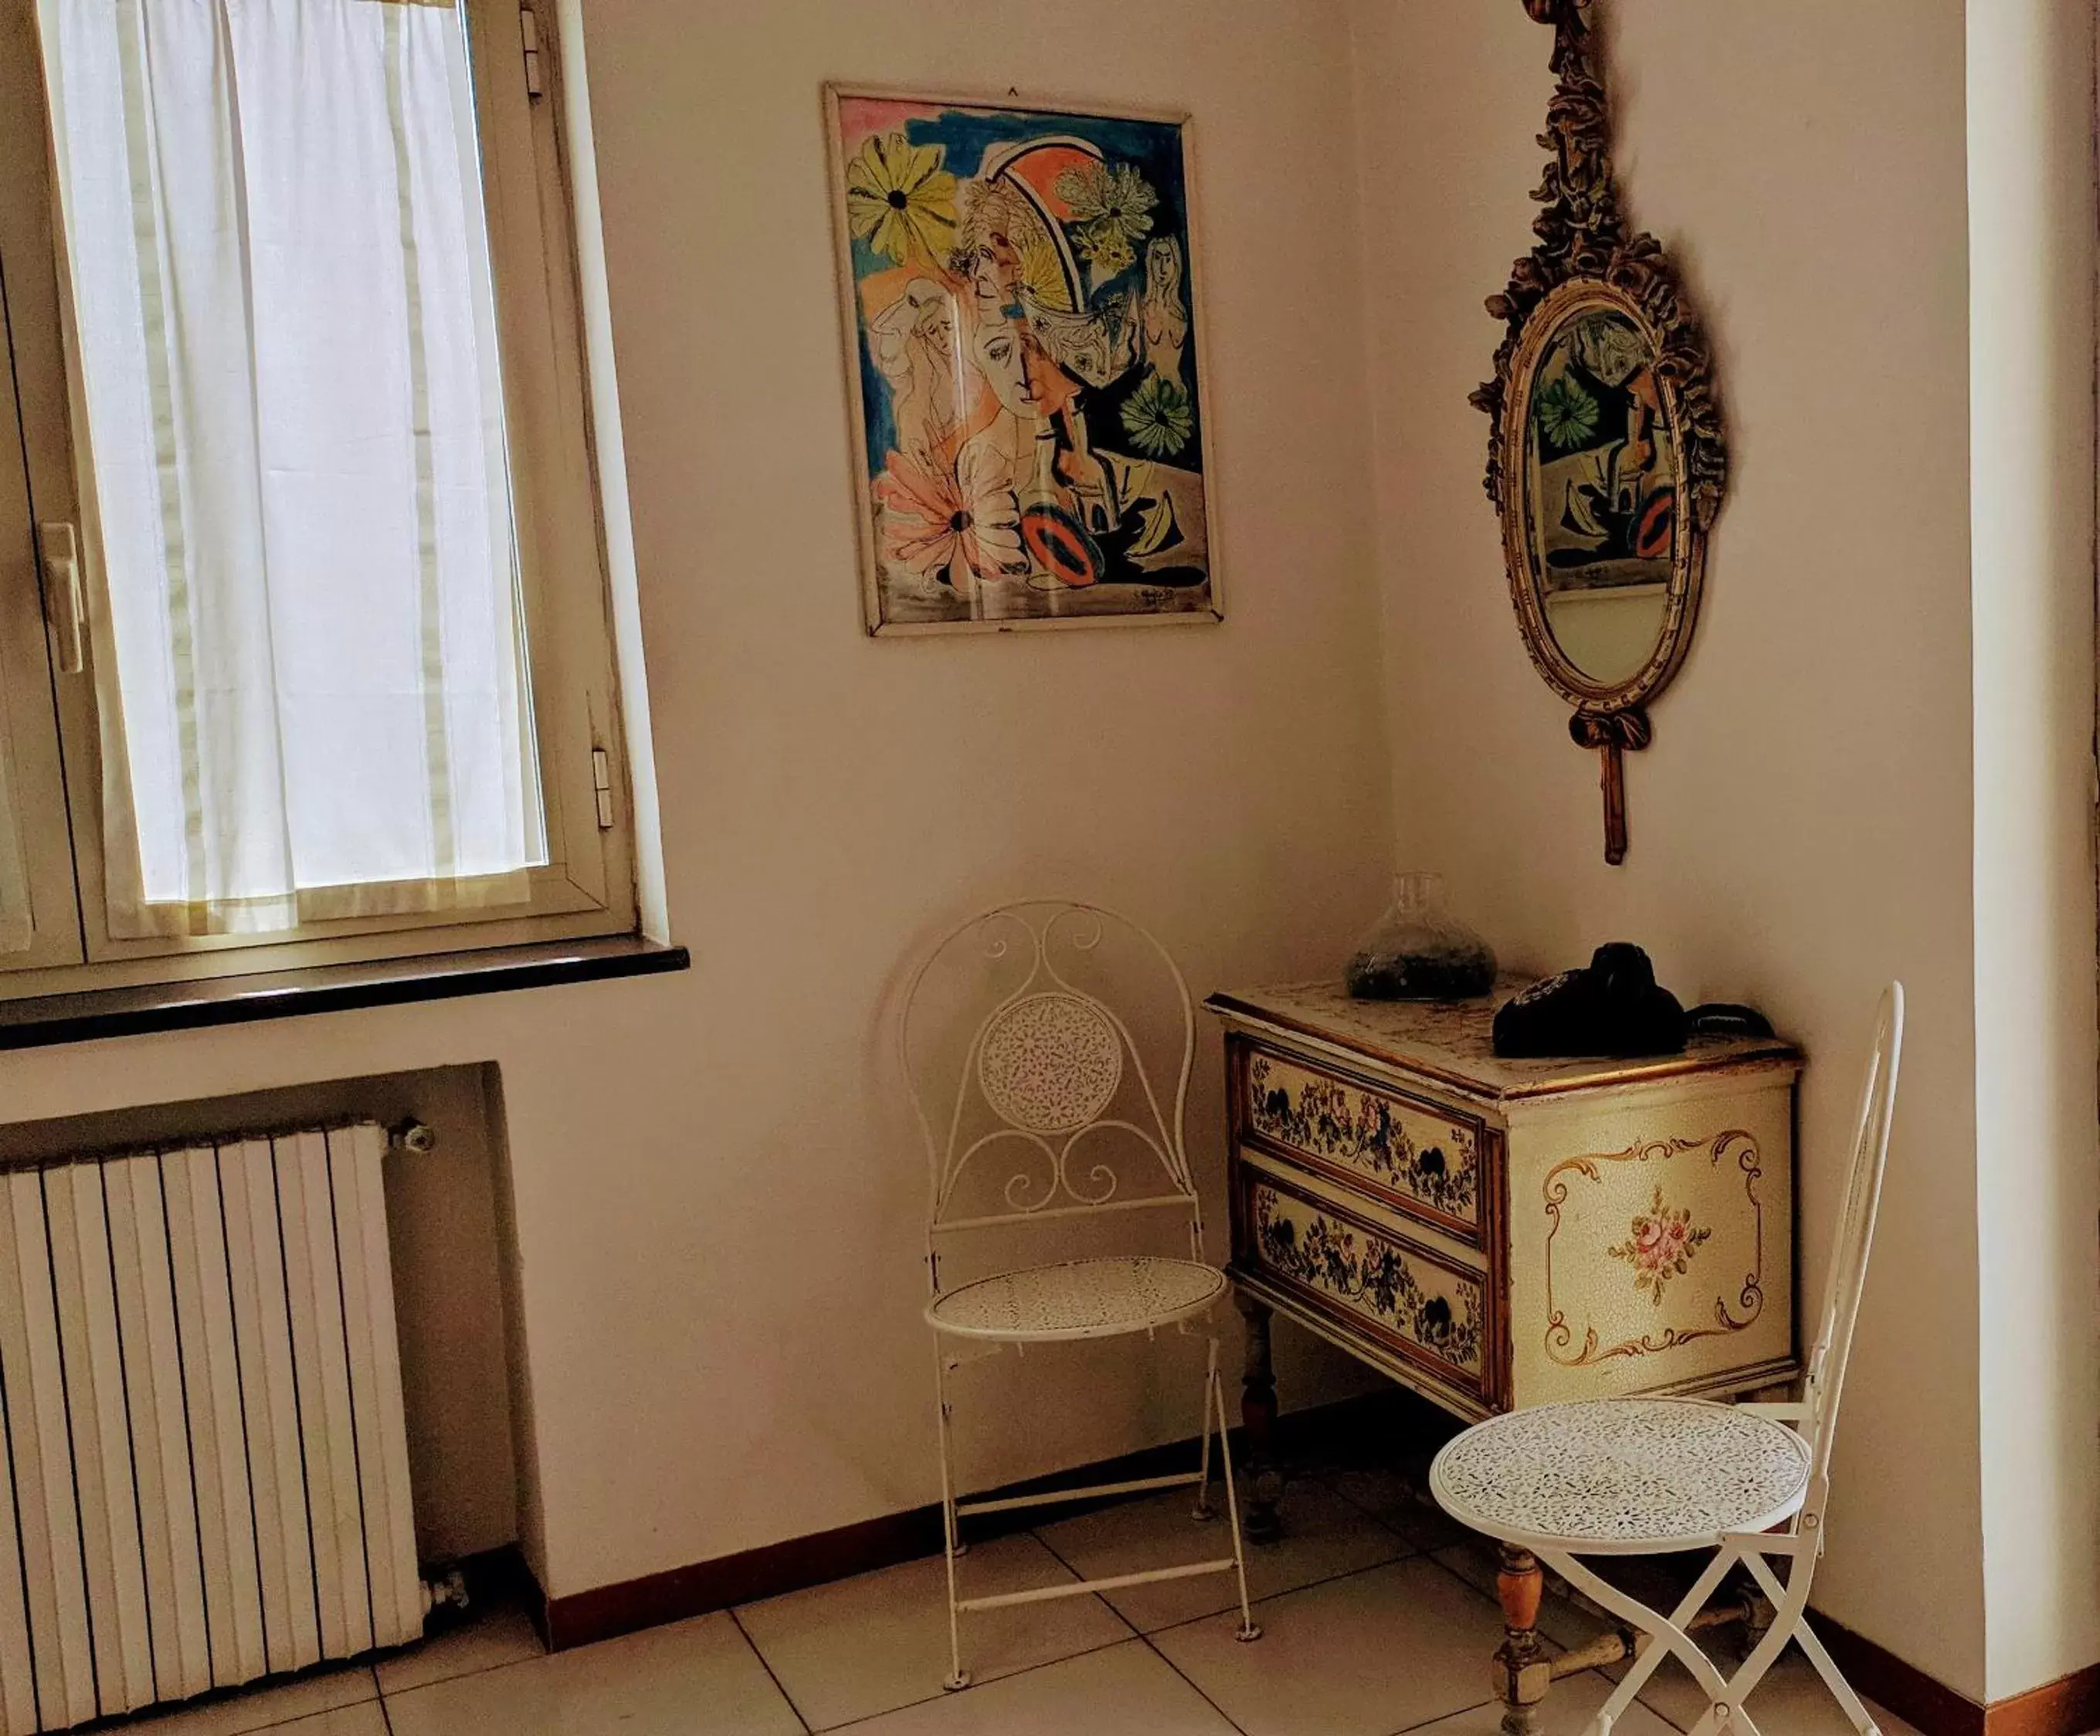 Seating Area in Peppino's Room Locazione turistica